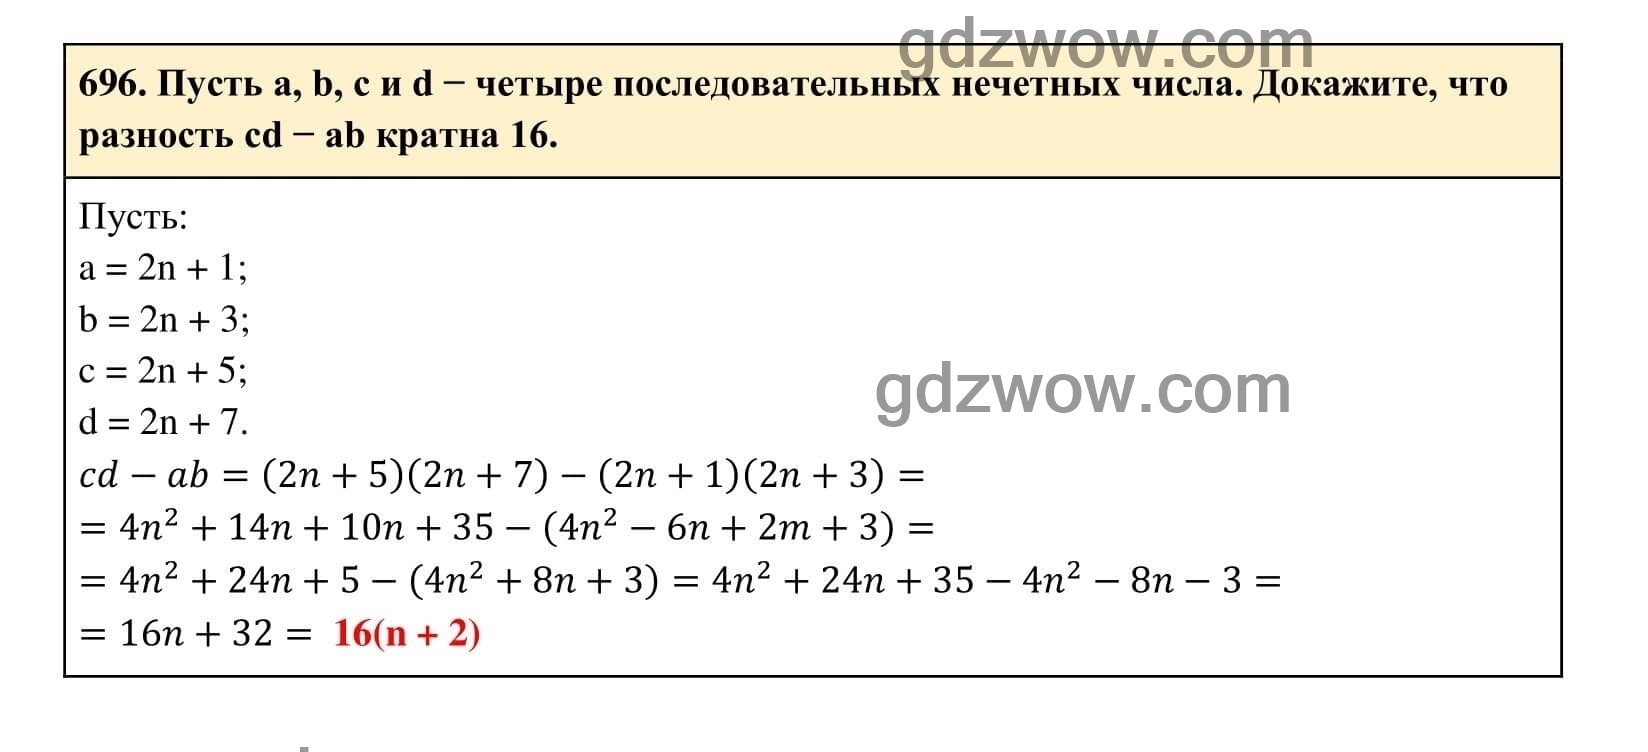 Упражнение 696 - ГДЗ по Алгебре 7 класс Учебник Макарычев (решебник) - GDZwow